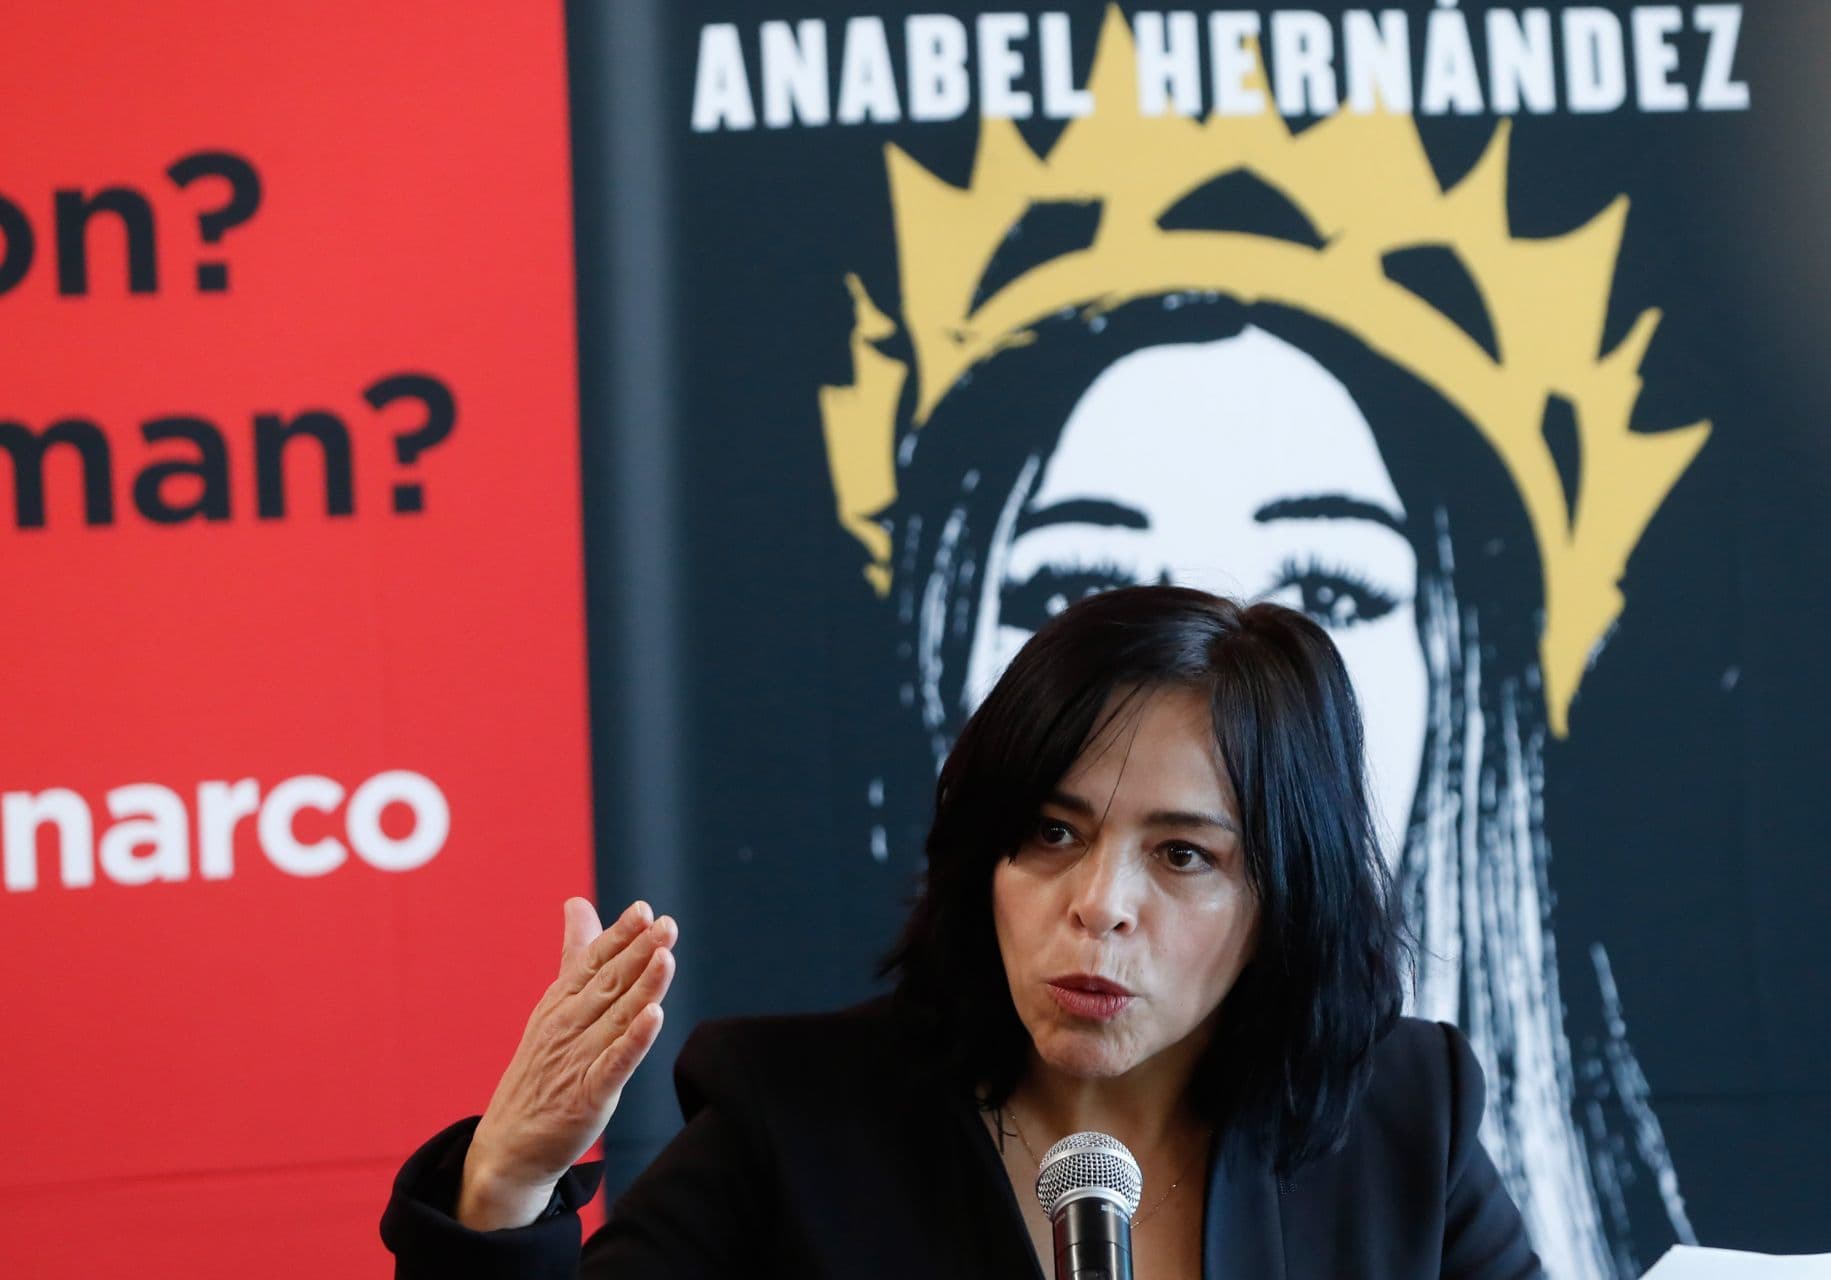 La periodista de investigación Anabel Hernández, dice que AMLO criminaliza periodistas